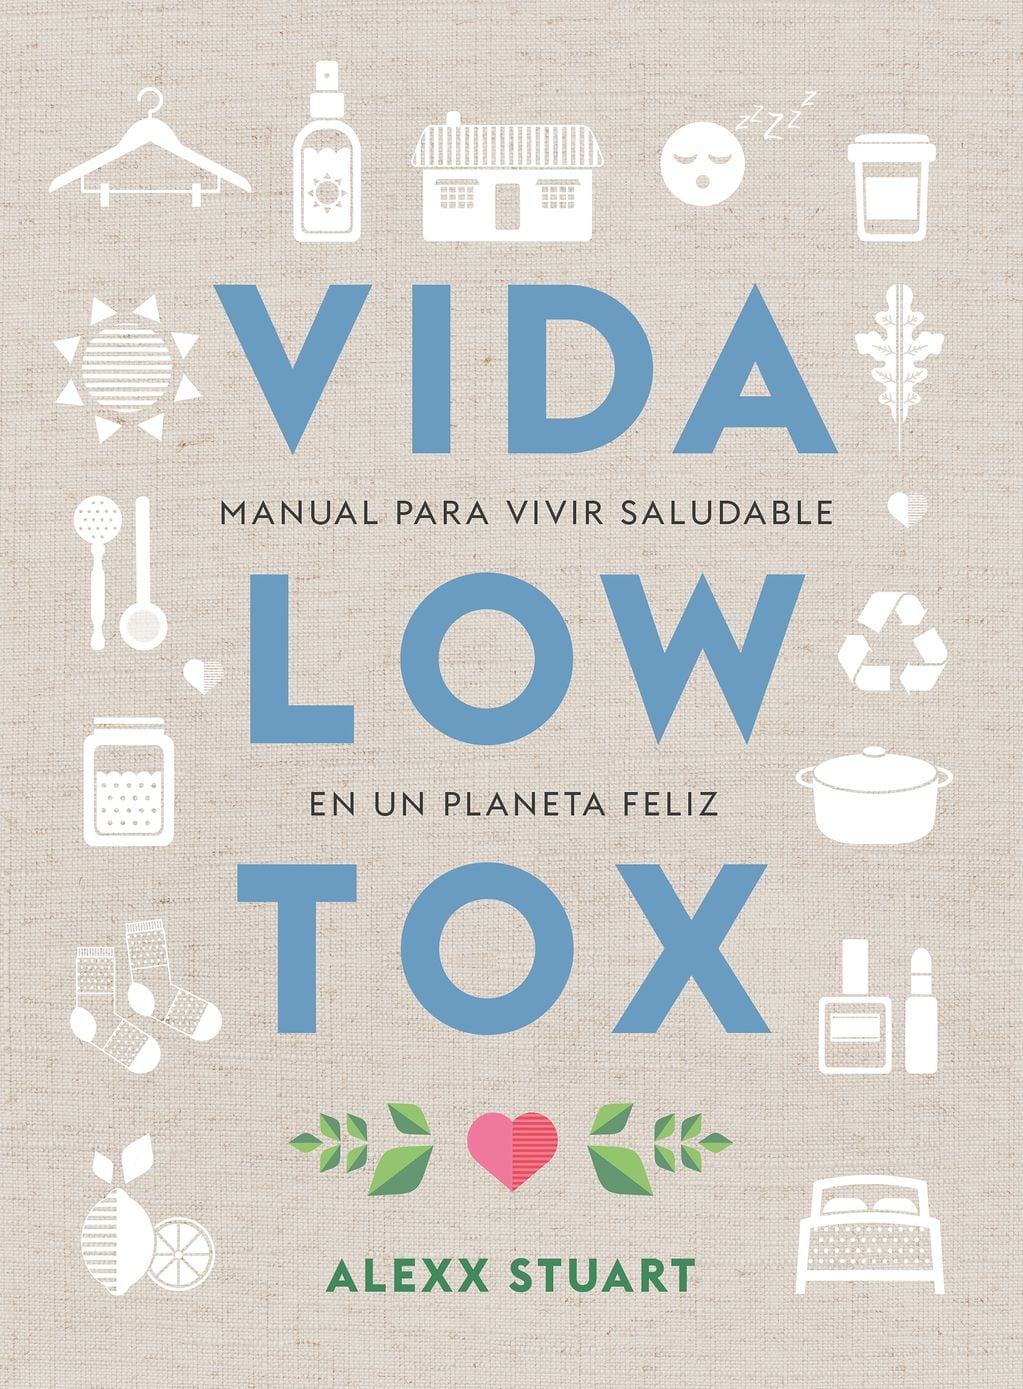 En "Vida Low Tox", la educadora Alexx Stuart nos aporta ideas para reducir la exposición a químicos en cuatro áreas clave de nuestro vivir: cuerpo, hogar, comida y mente.